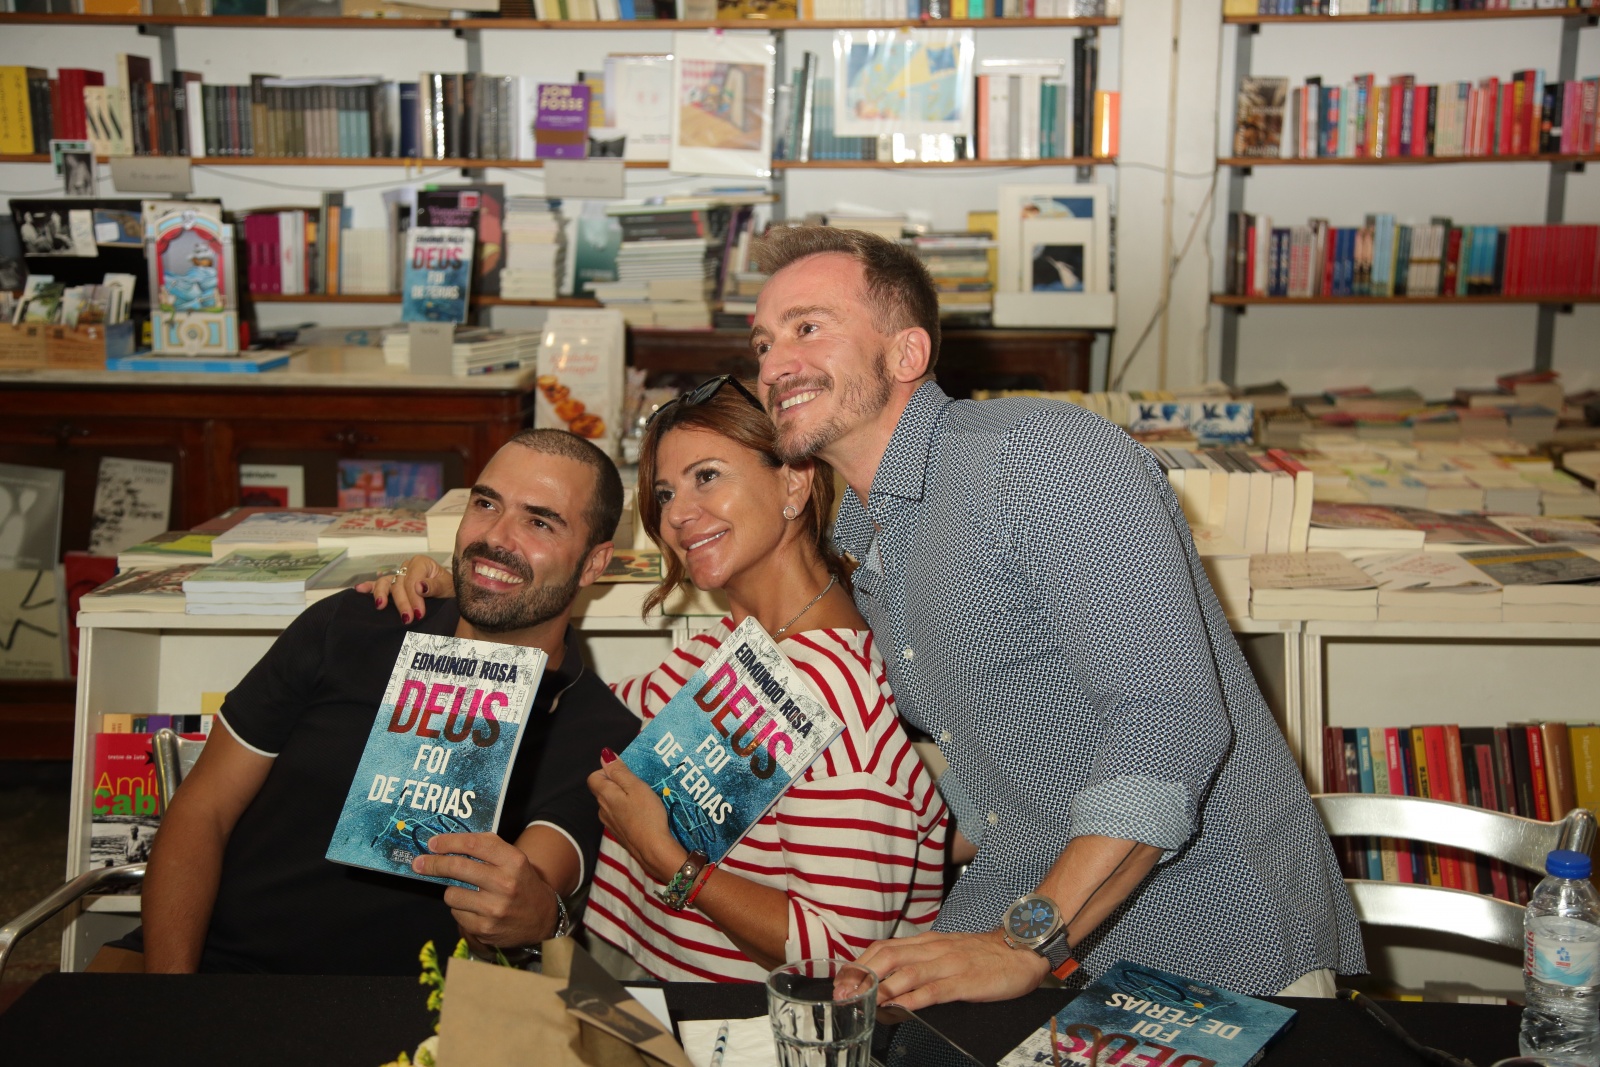 Lançamento do livro "Deus Foi de Férias" de Edmundo Rosa. O ator ao lado dos colegas Miguel Bogalho e Sílvia Rizzo. Foto: João Lemos